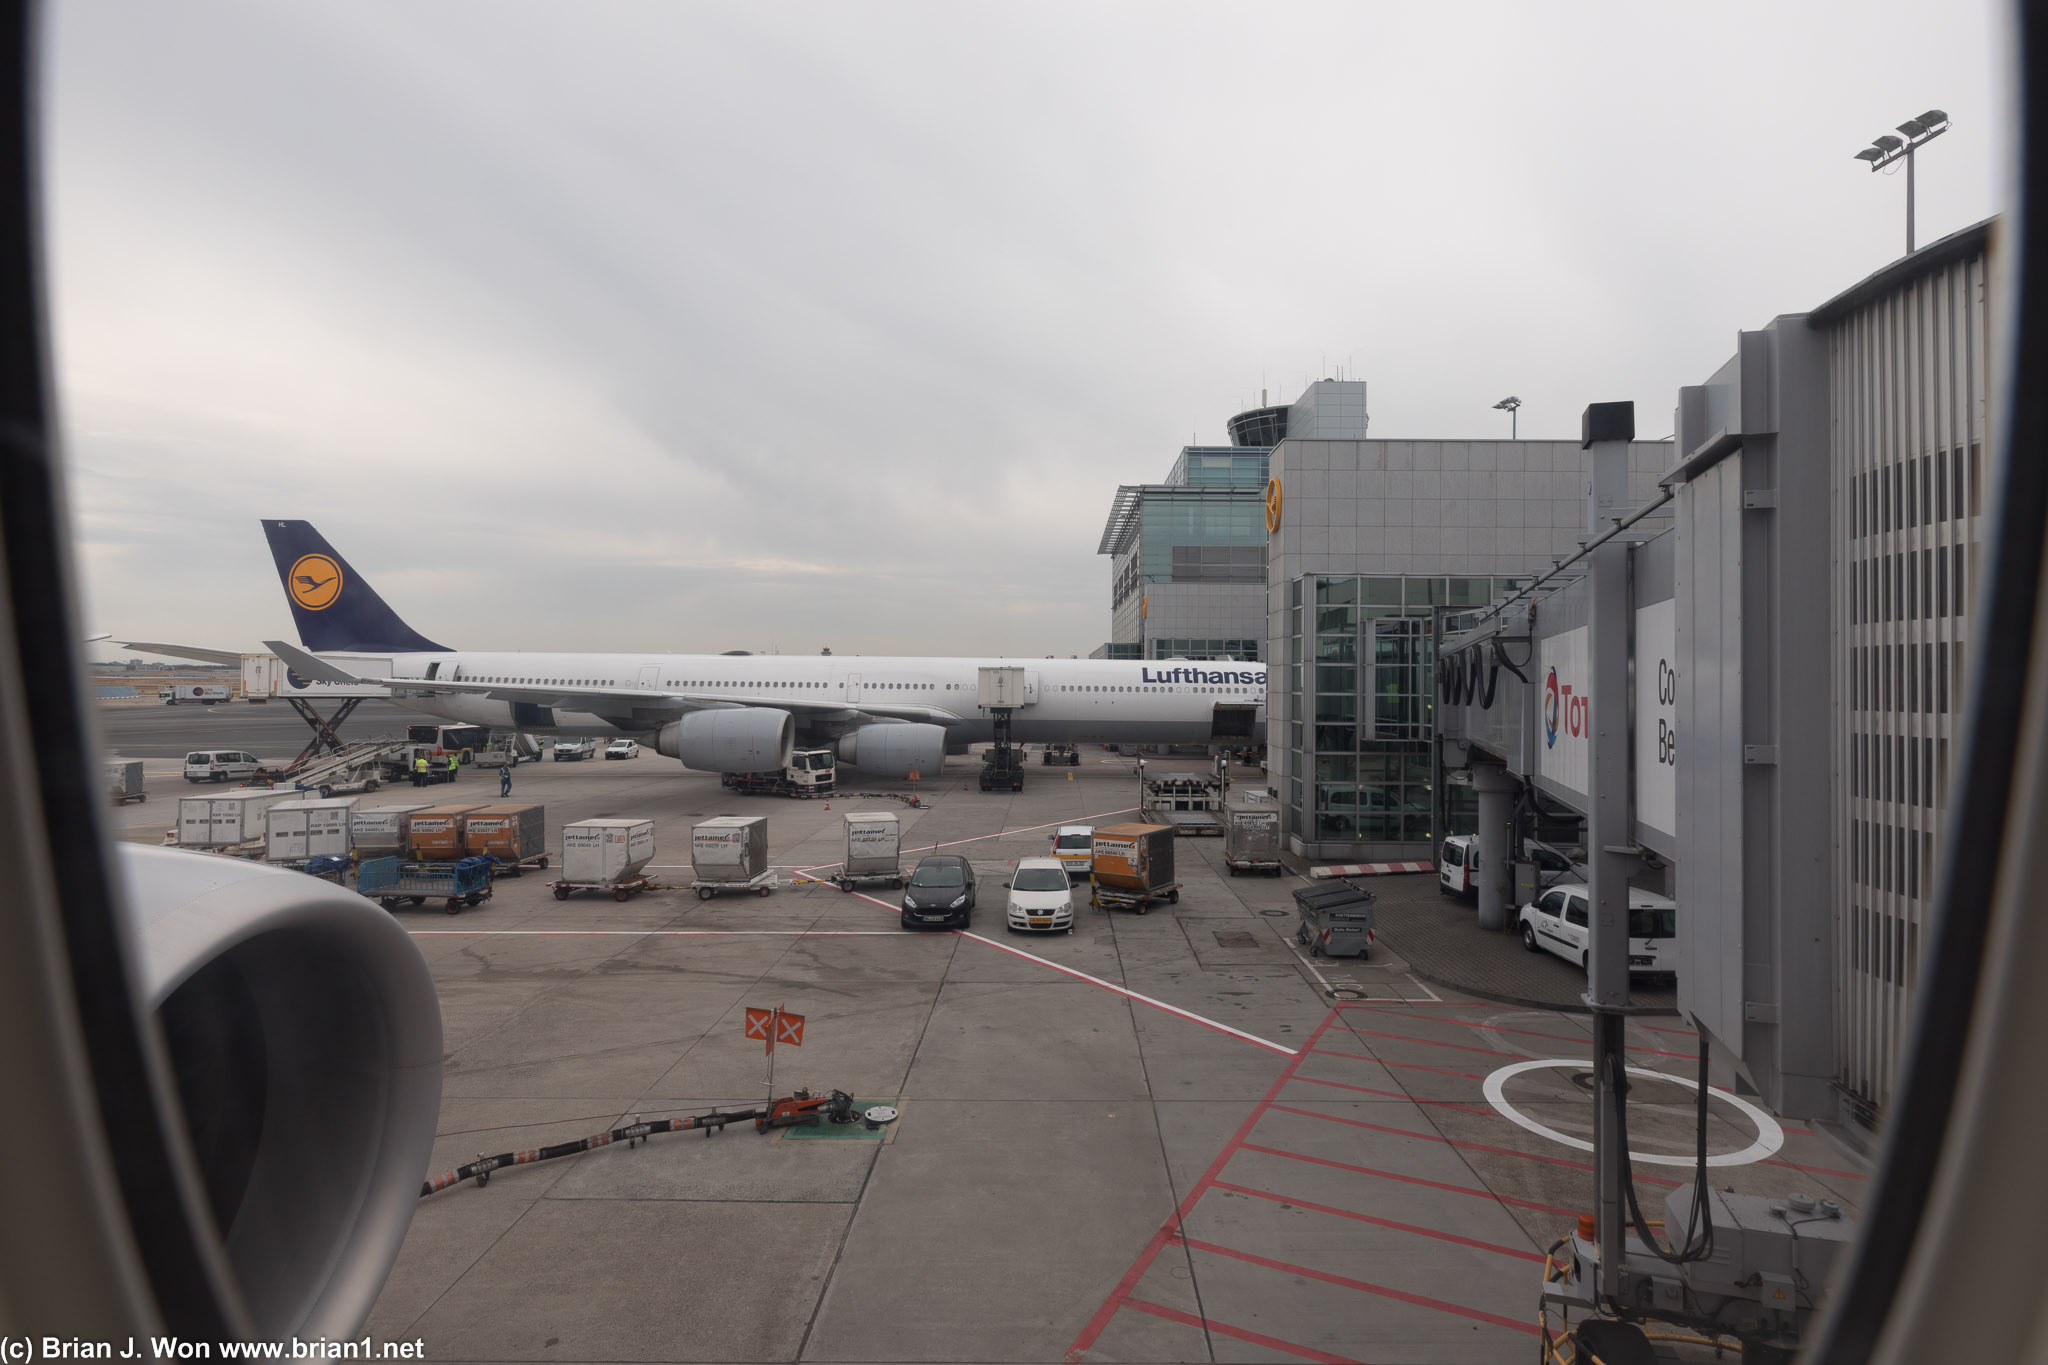 Lufthansa Airbus A340-600 at the next gate.